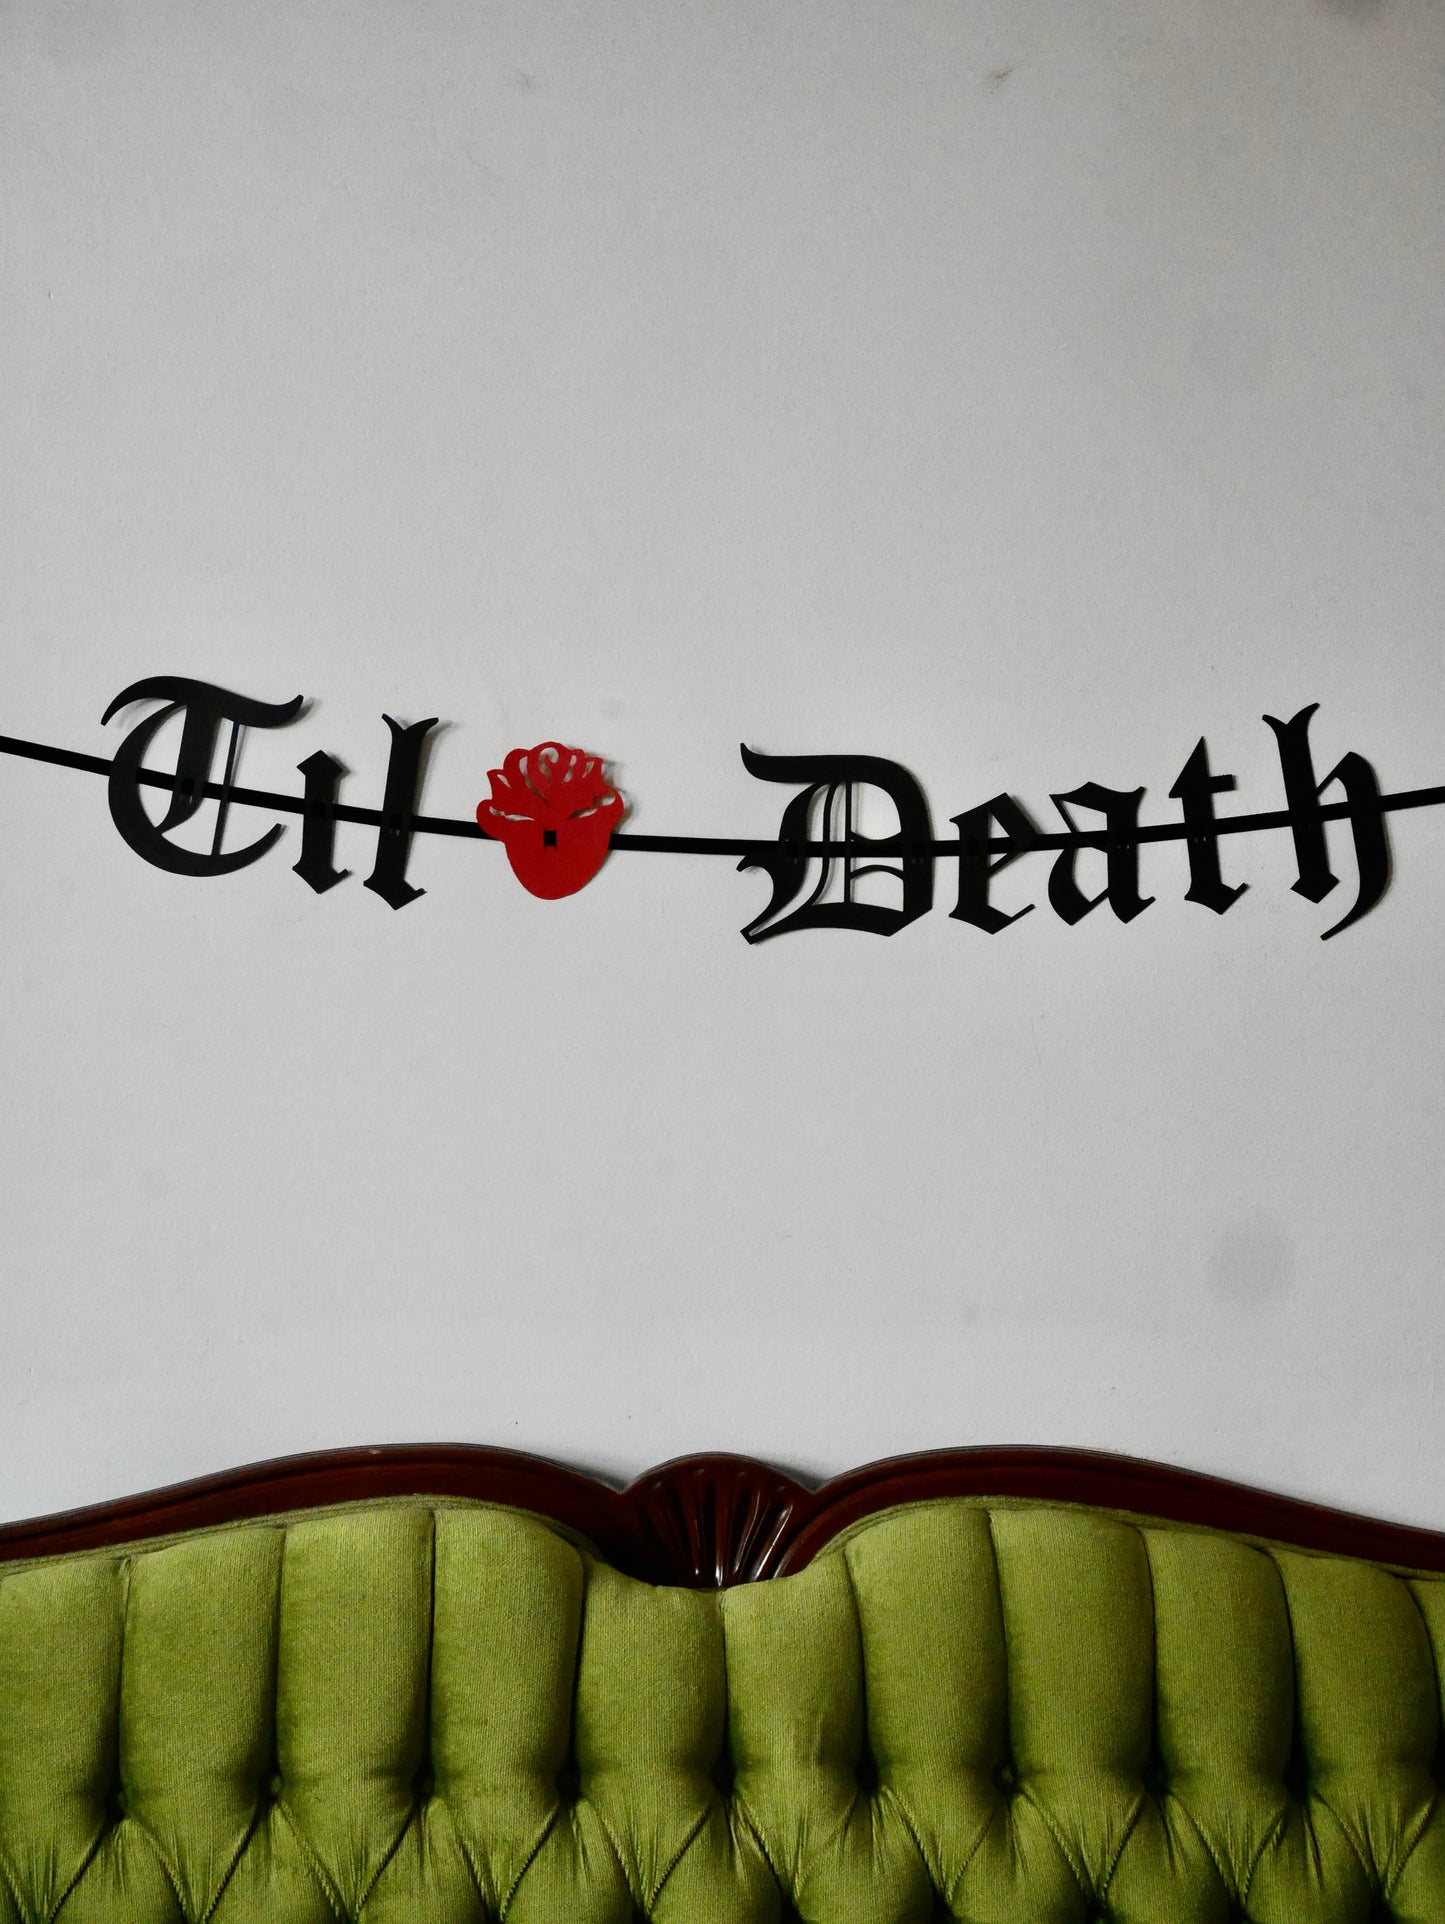 Til Death - Small Paper Letter Banner